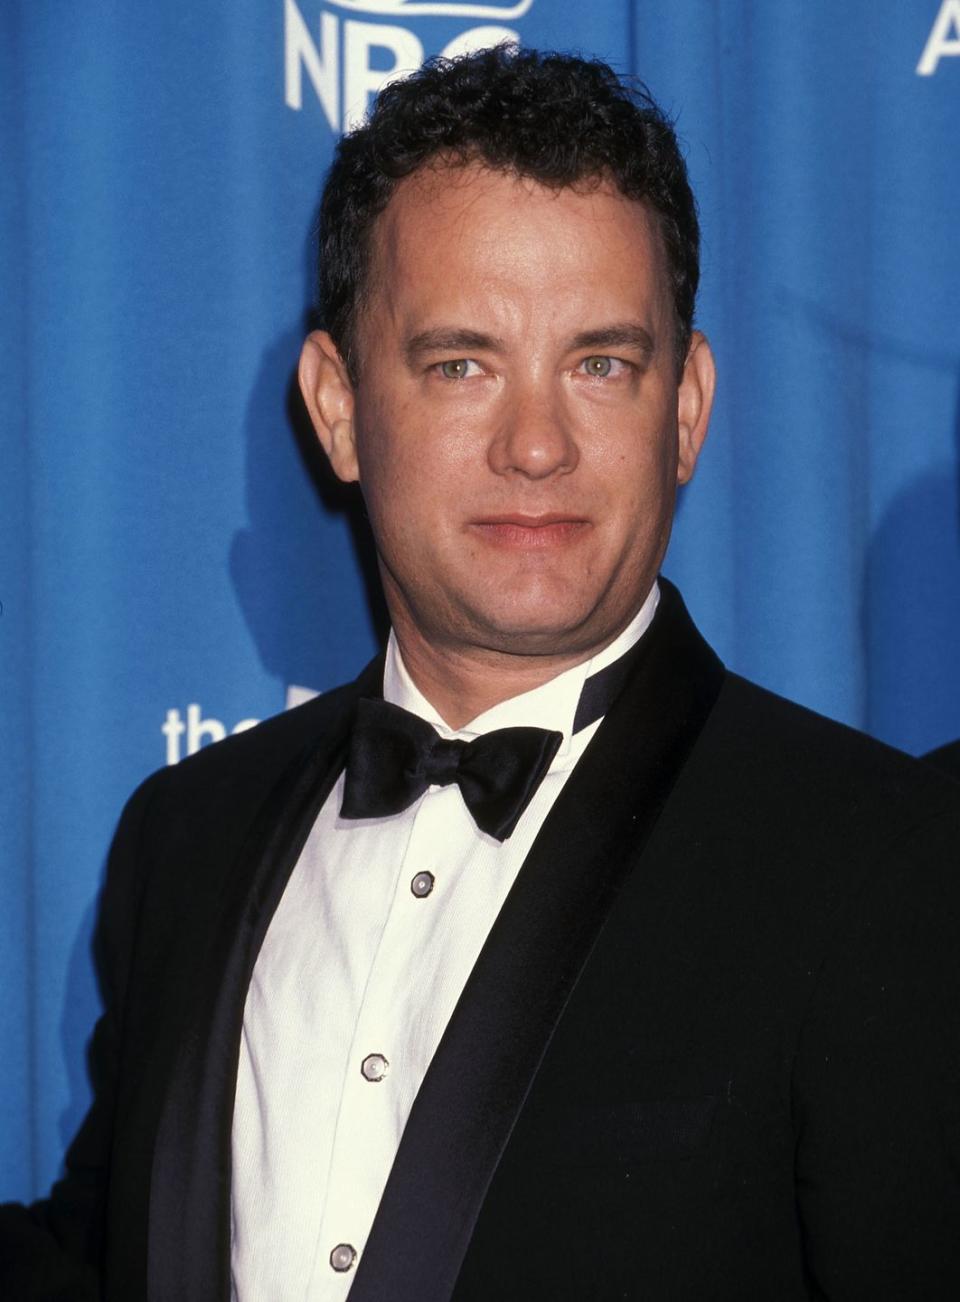 1998: Tom Hanks